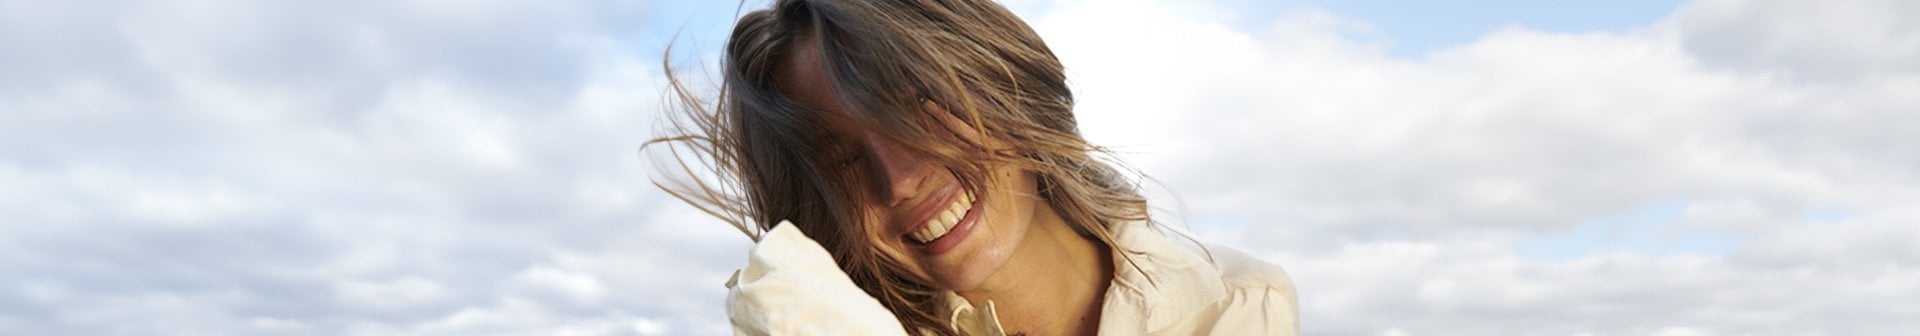 Eine lächelnde junge Frau wehen die Haare vor ihr Gesicht